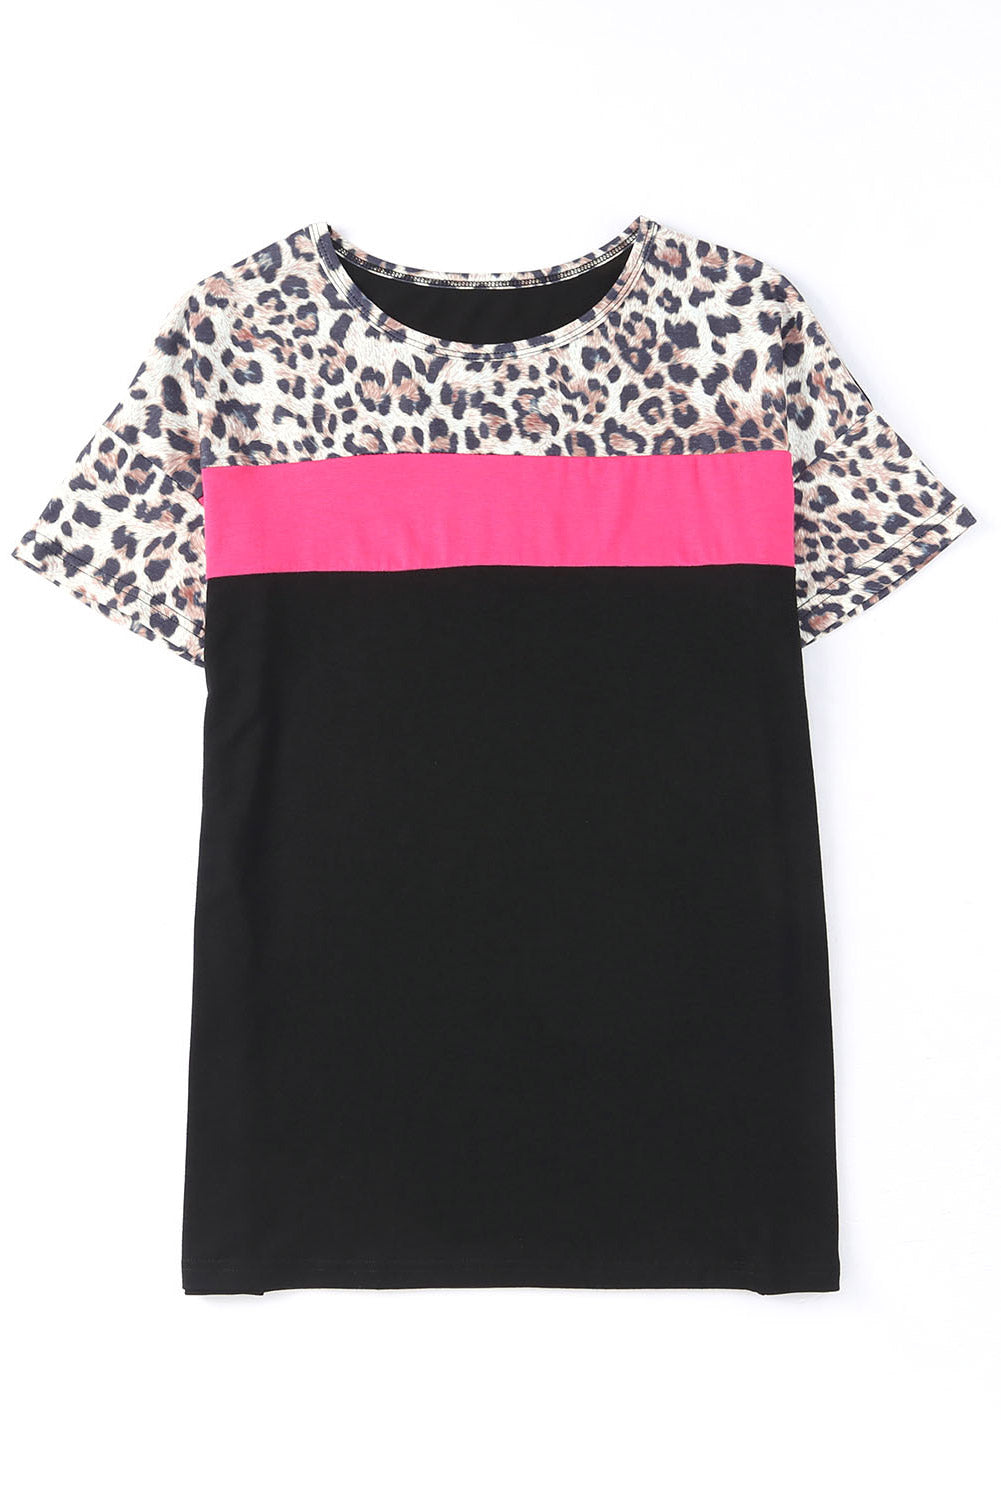 Women's Leopard Color Block Short Sleeve Tee